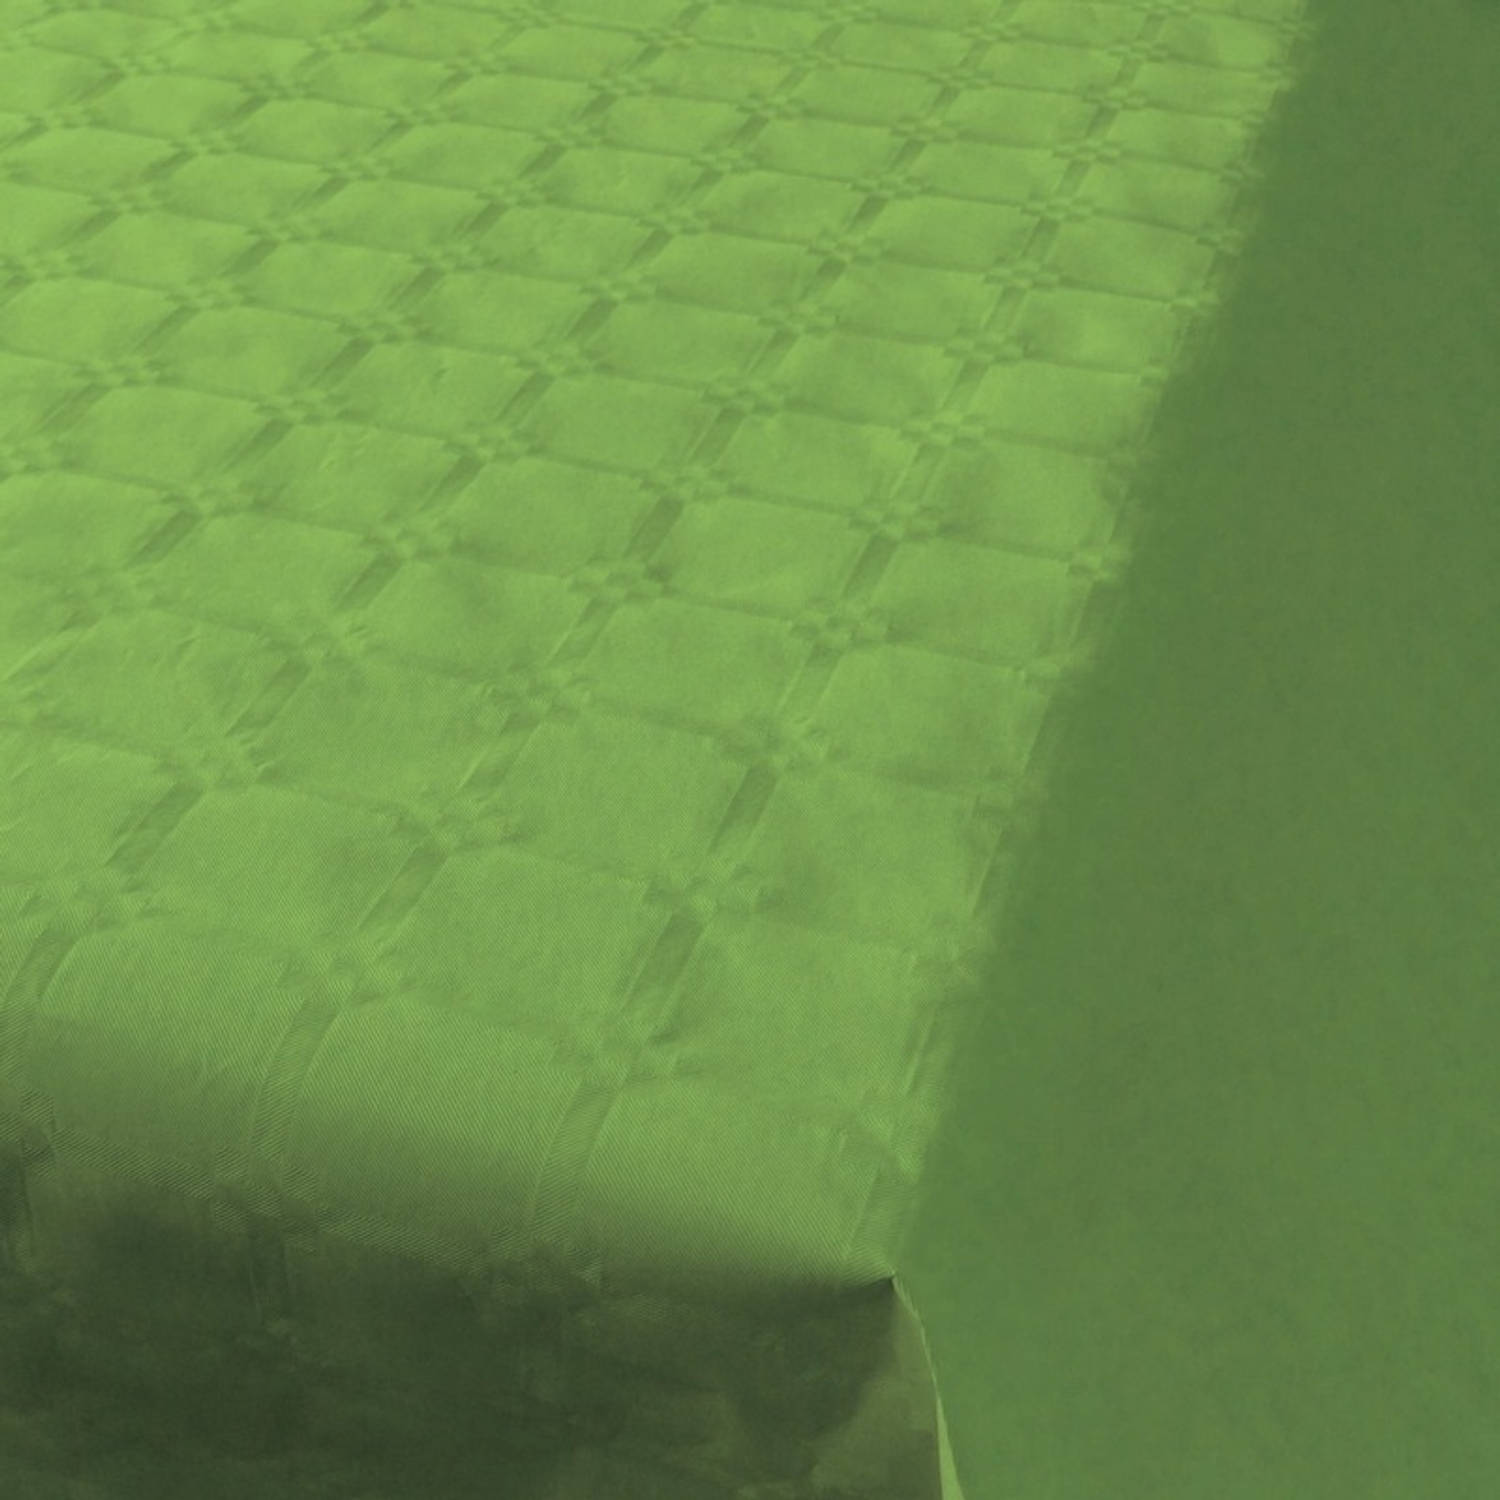 Lichtgroen papieren tafellaken/tafelkleed 800 118 op rol - Licht groene tafeldecoratie versieringen | Blokker